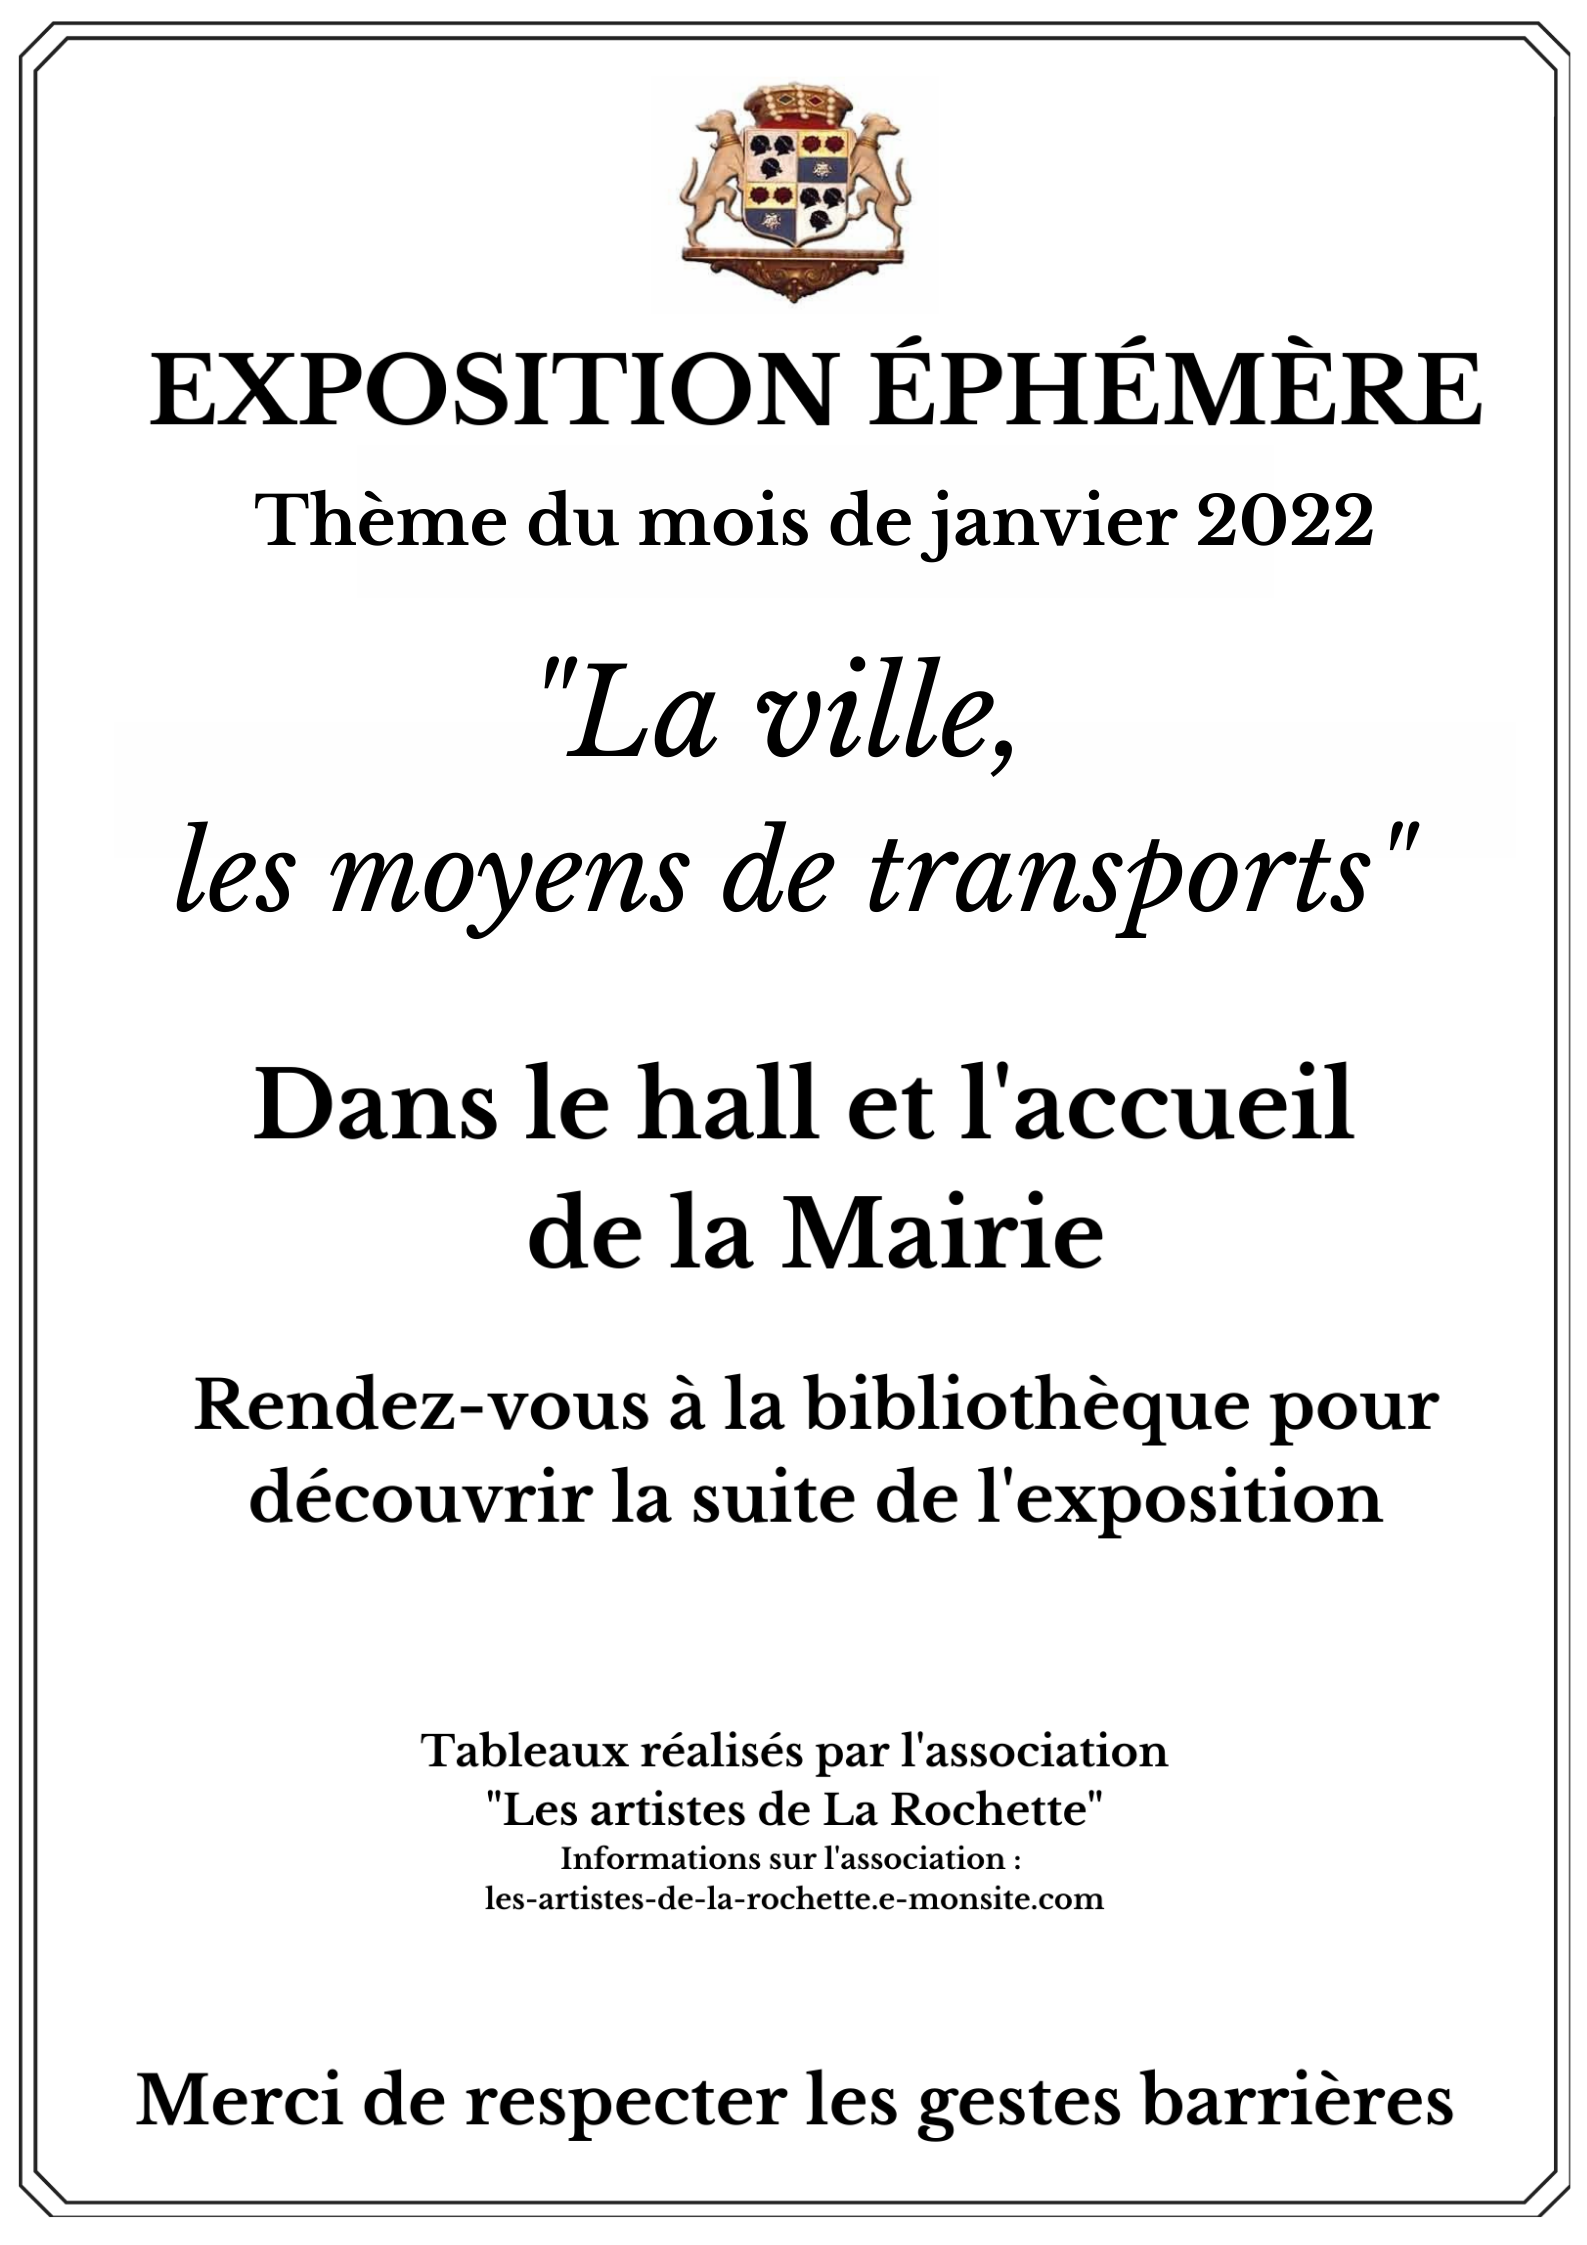 Affiche expo ephemere janvier 2022